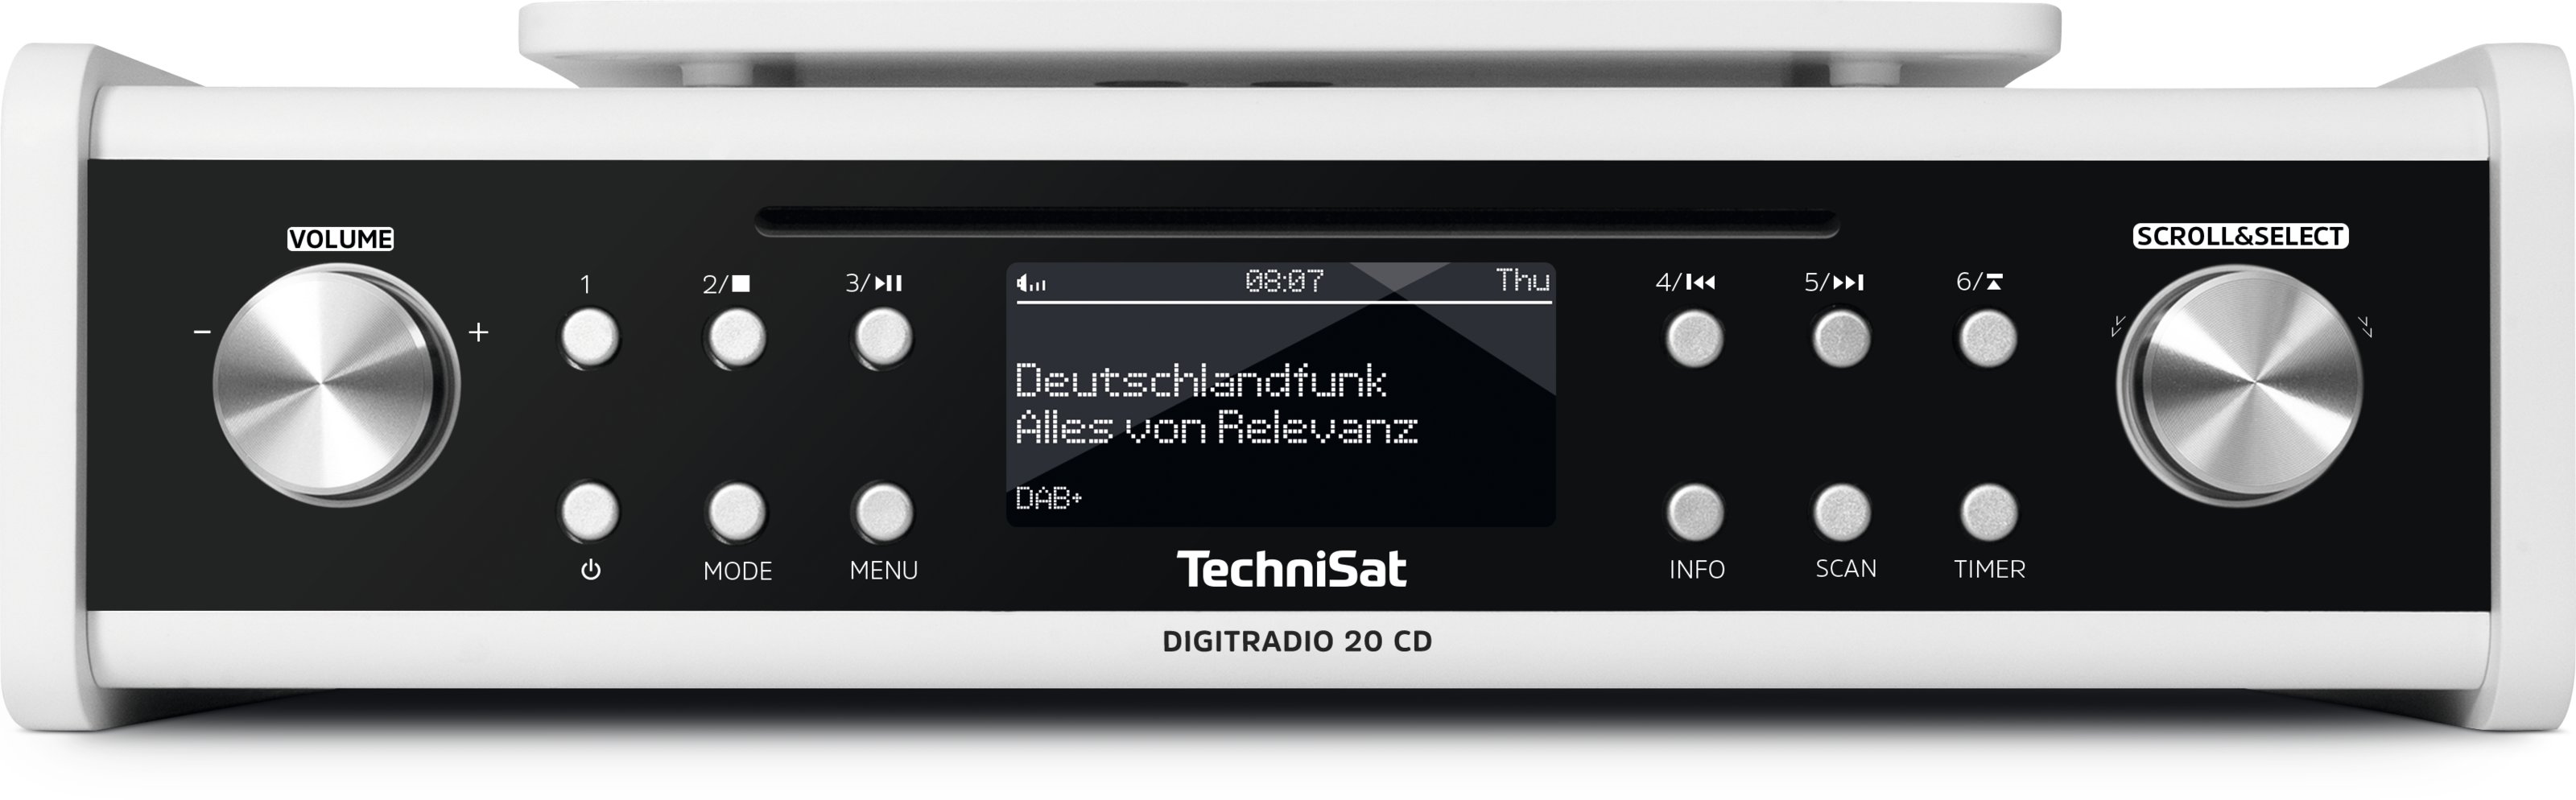 TechniSat DIGITRADIO-20 CD weiss Küchenradio